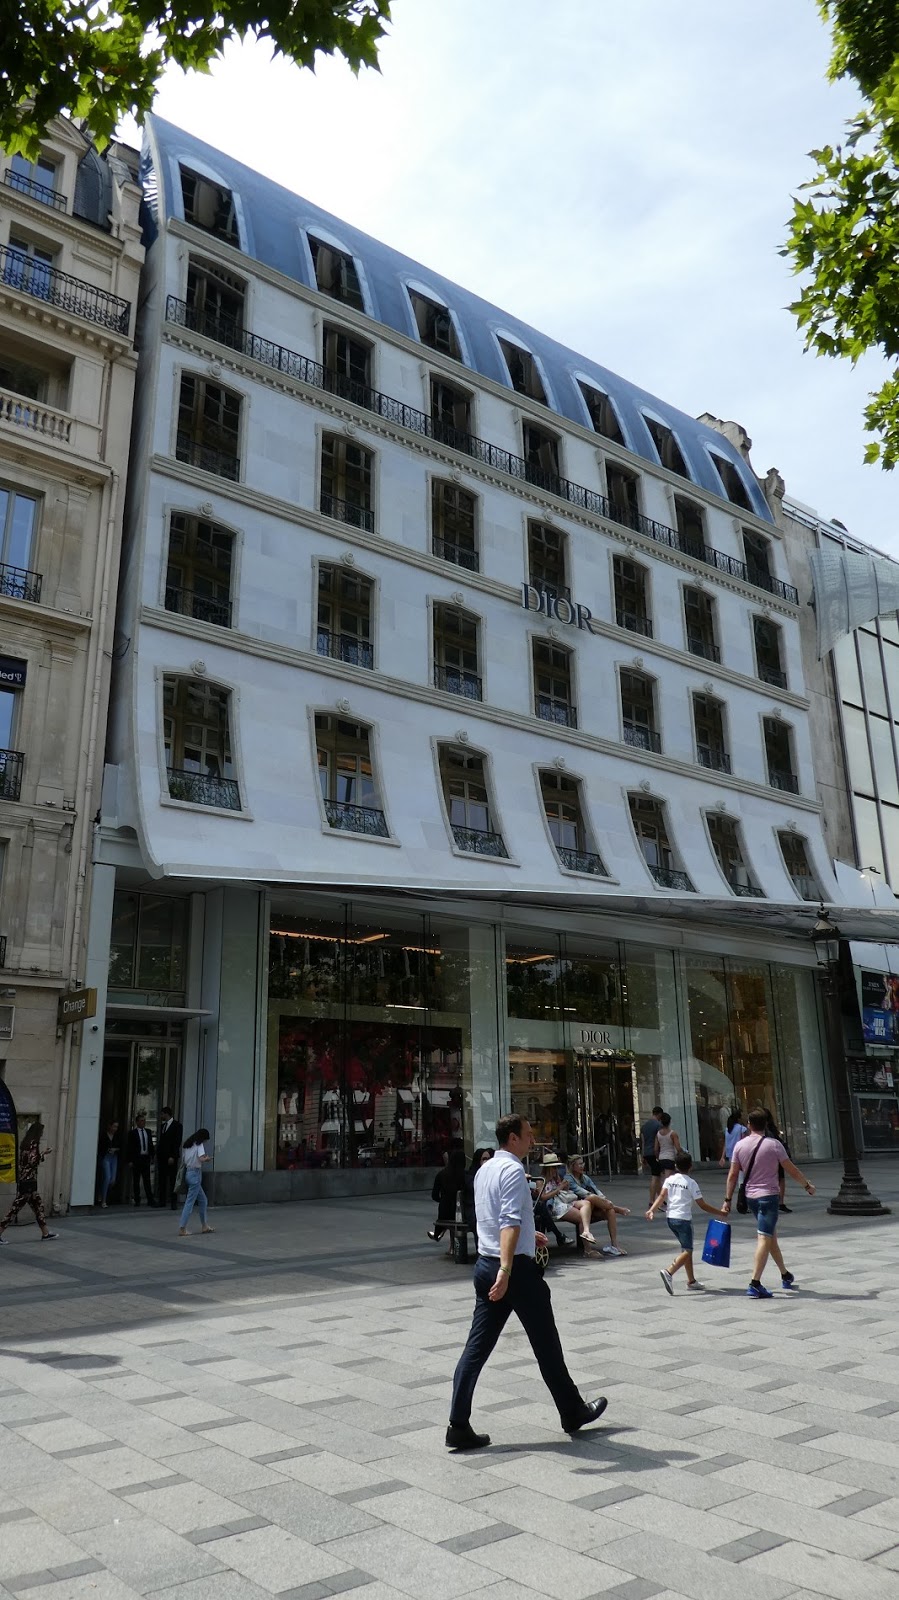 Paris-bise-art : Dior - Champs-Elysées